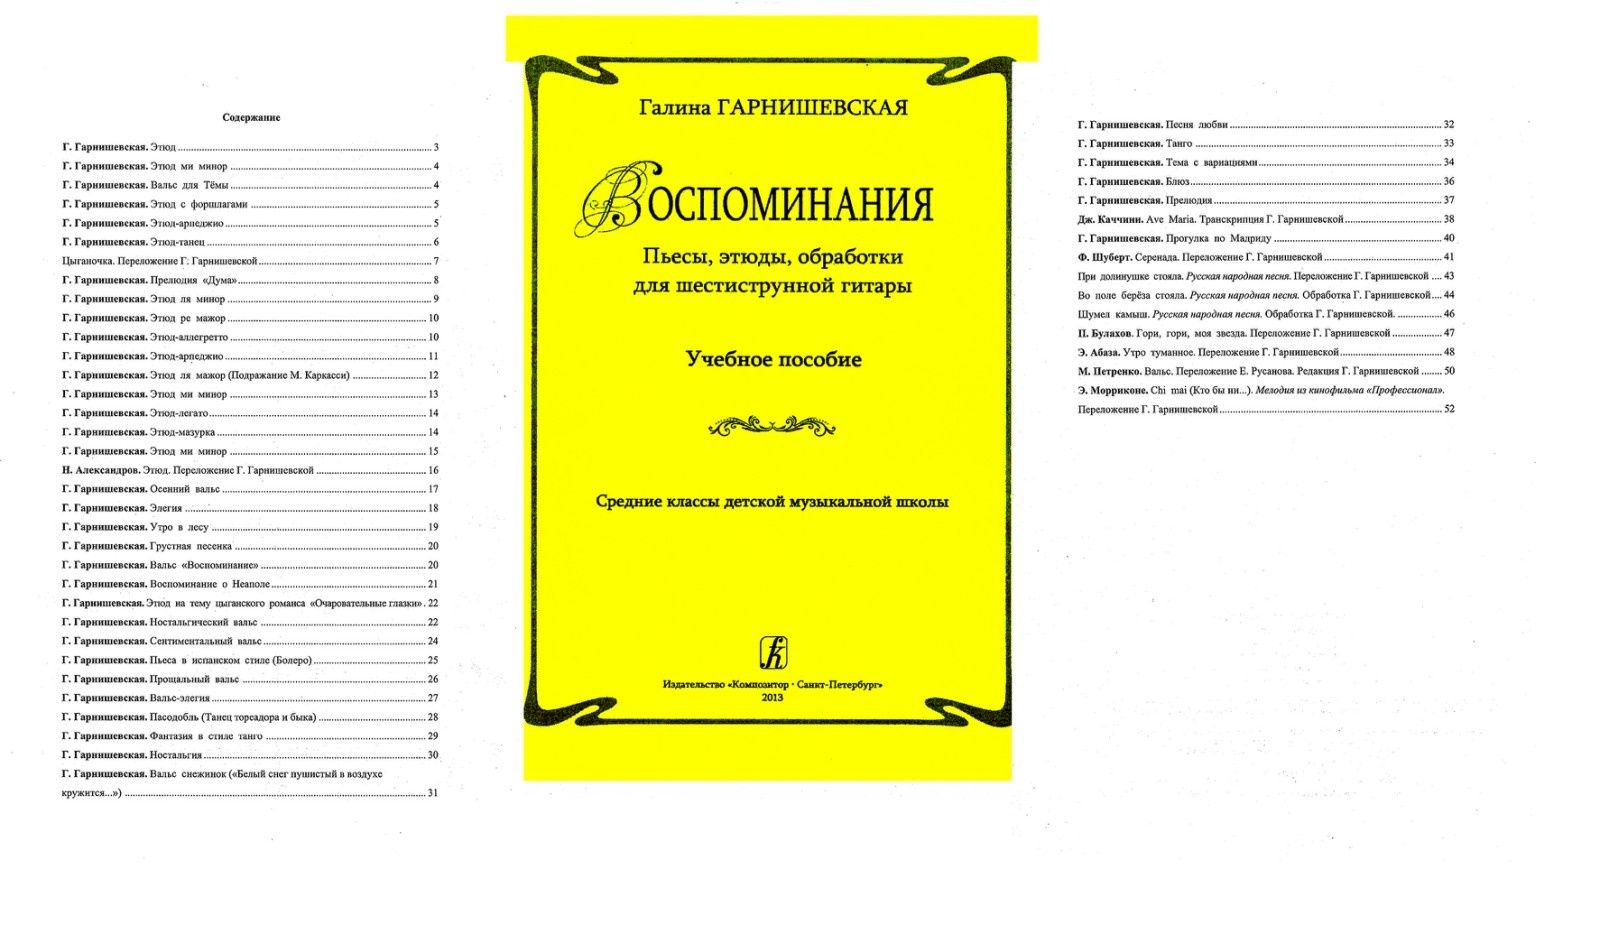 Ноты для Гитары
Г. Гарнишевская
Пьесы, этюды, обработки для шестиструн